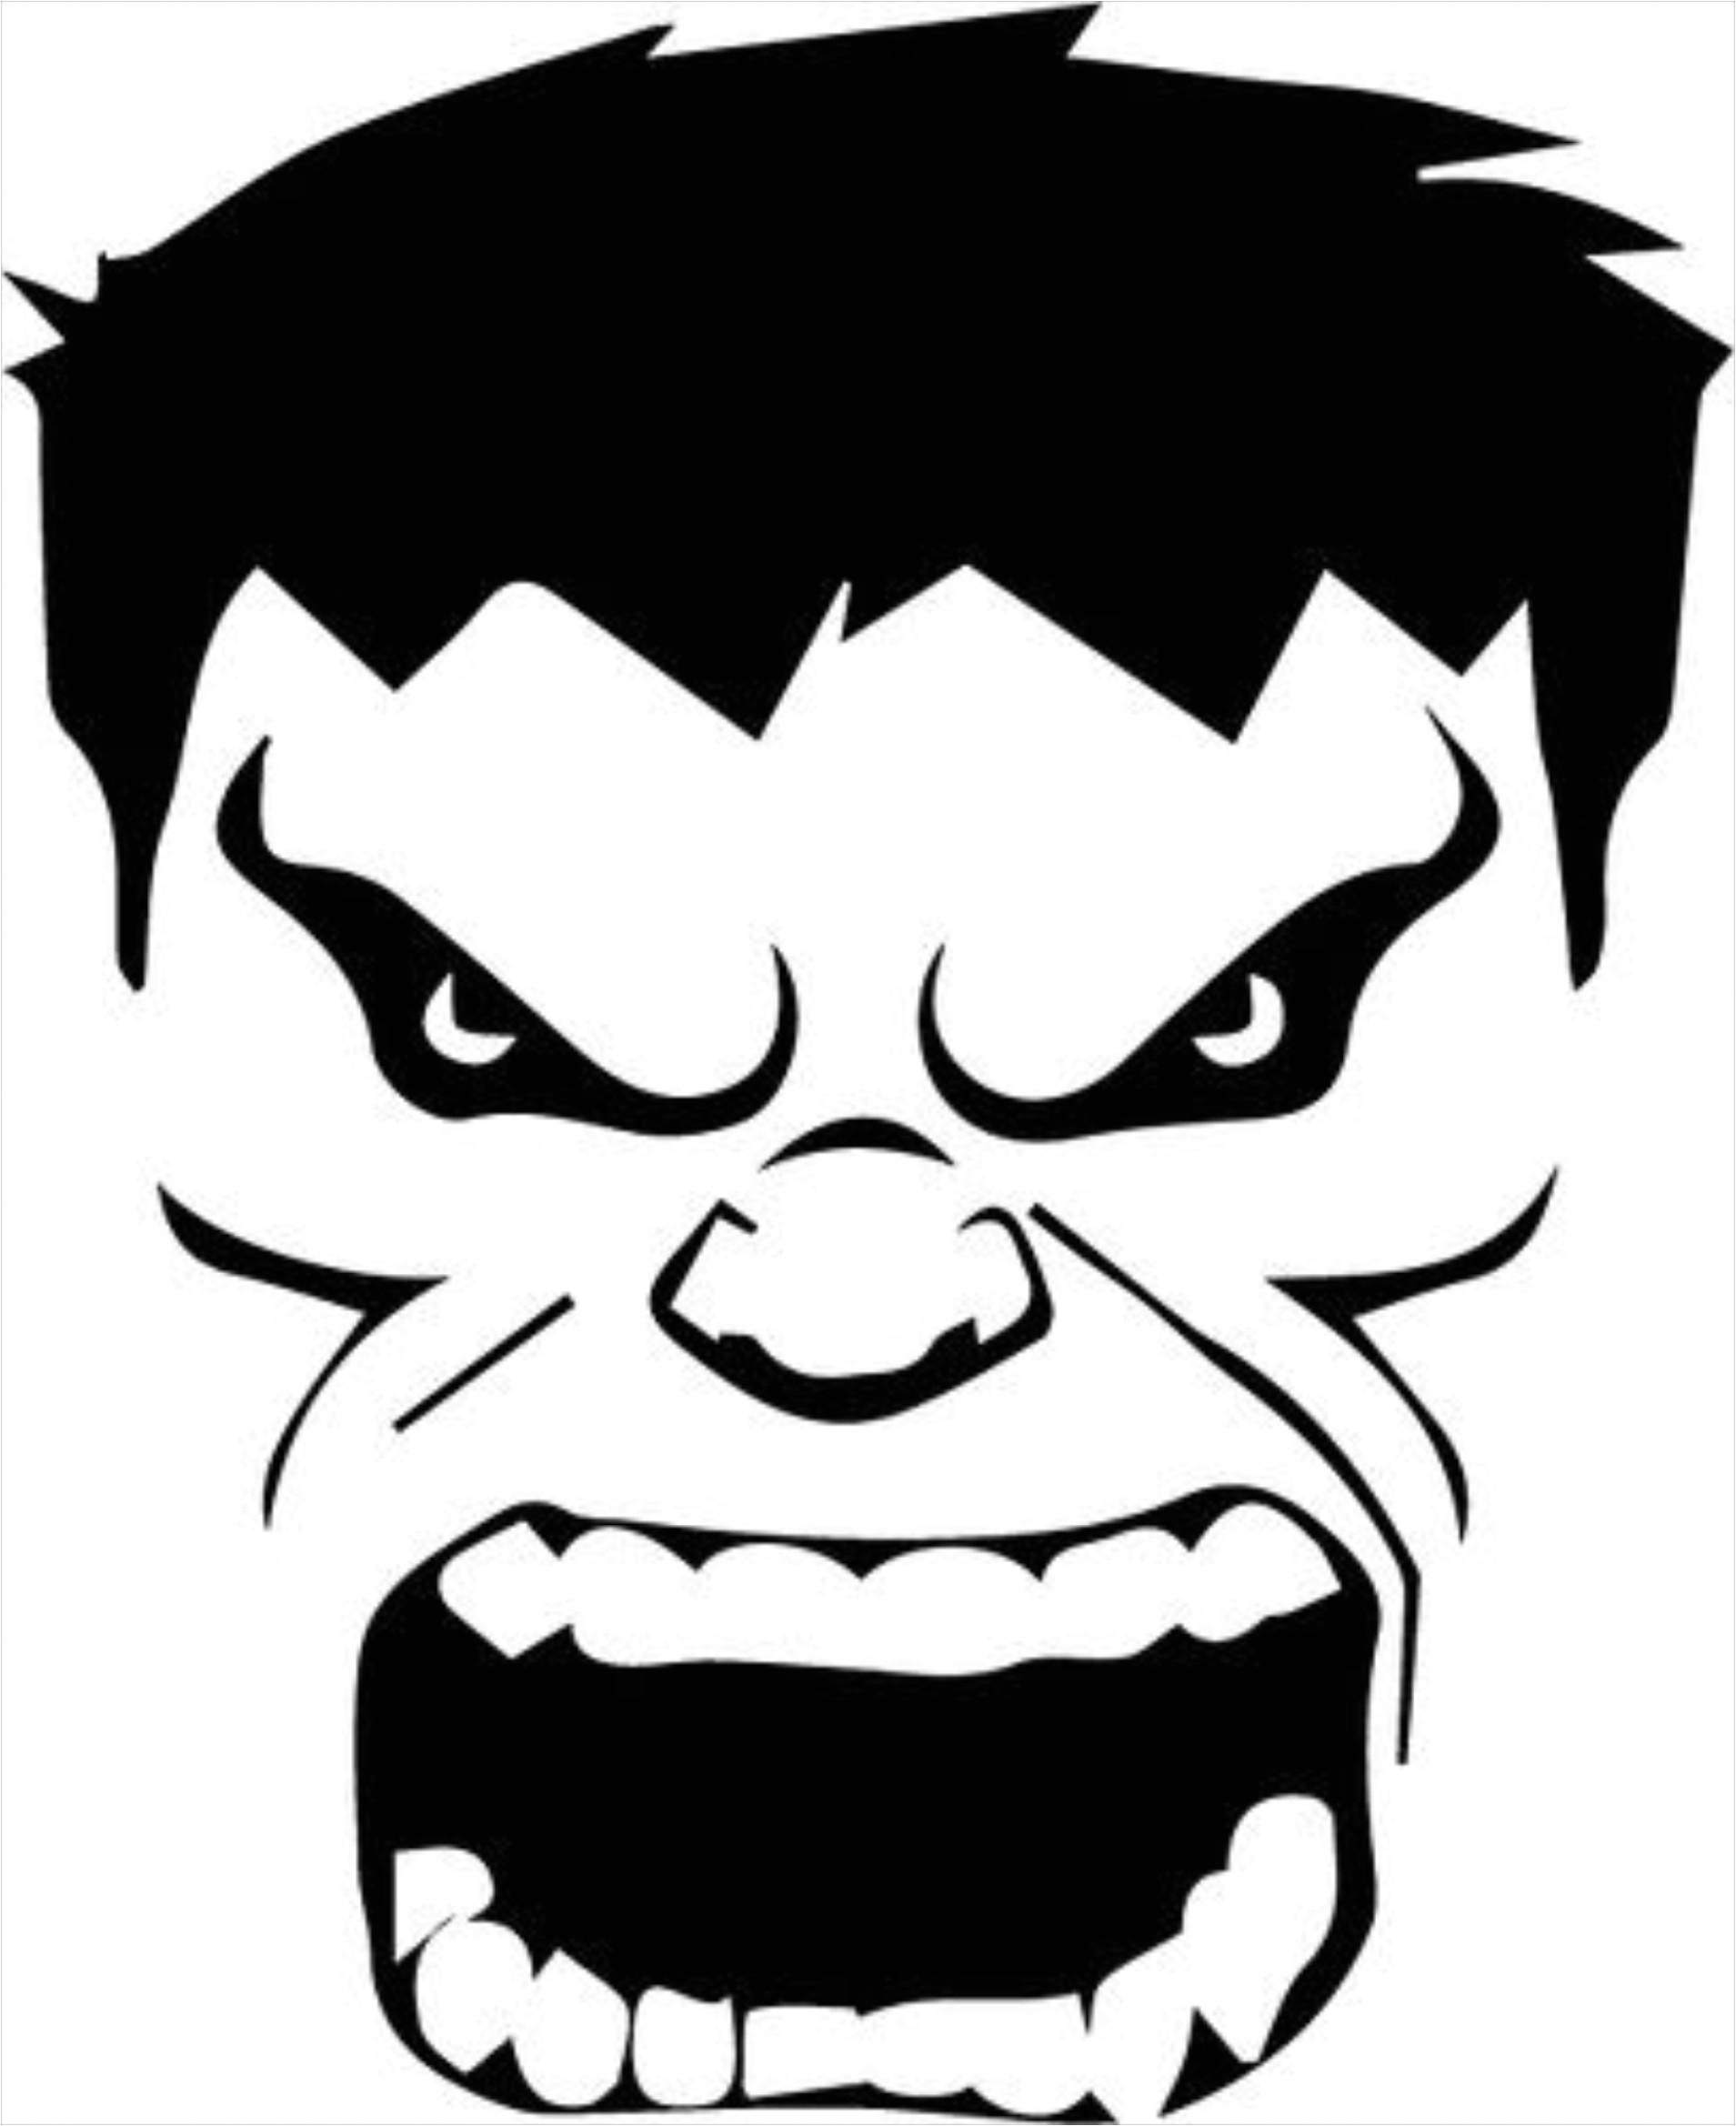 Incredible Hulk Face Template | williamson-ga.us